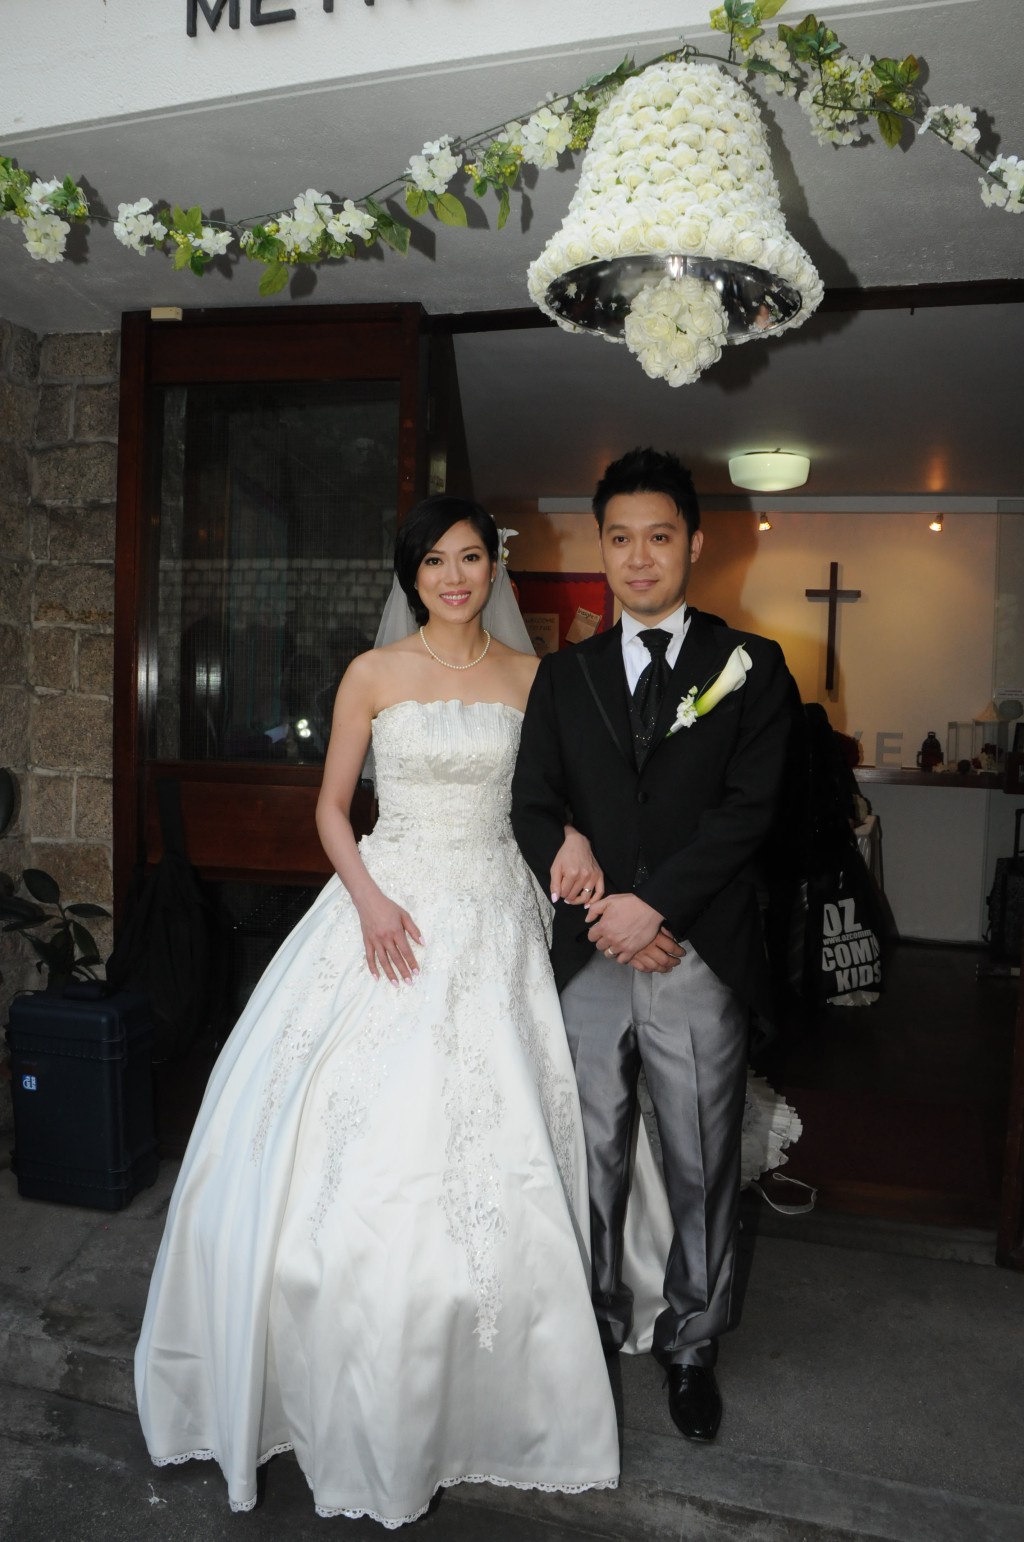 林淑敏2013年與商人陳中原結婚。